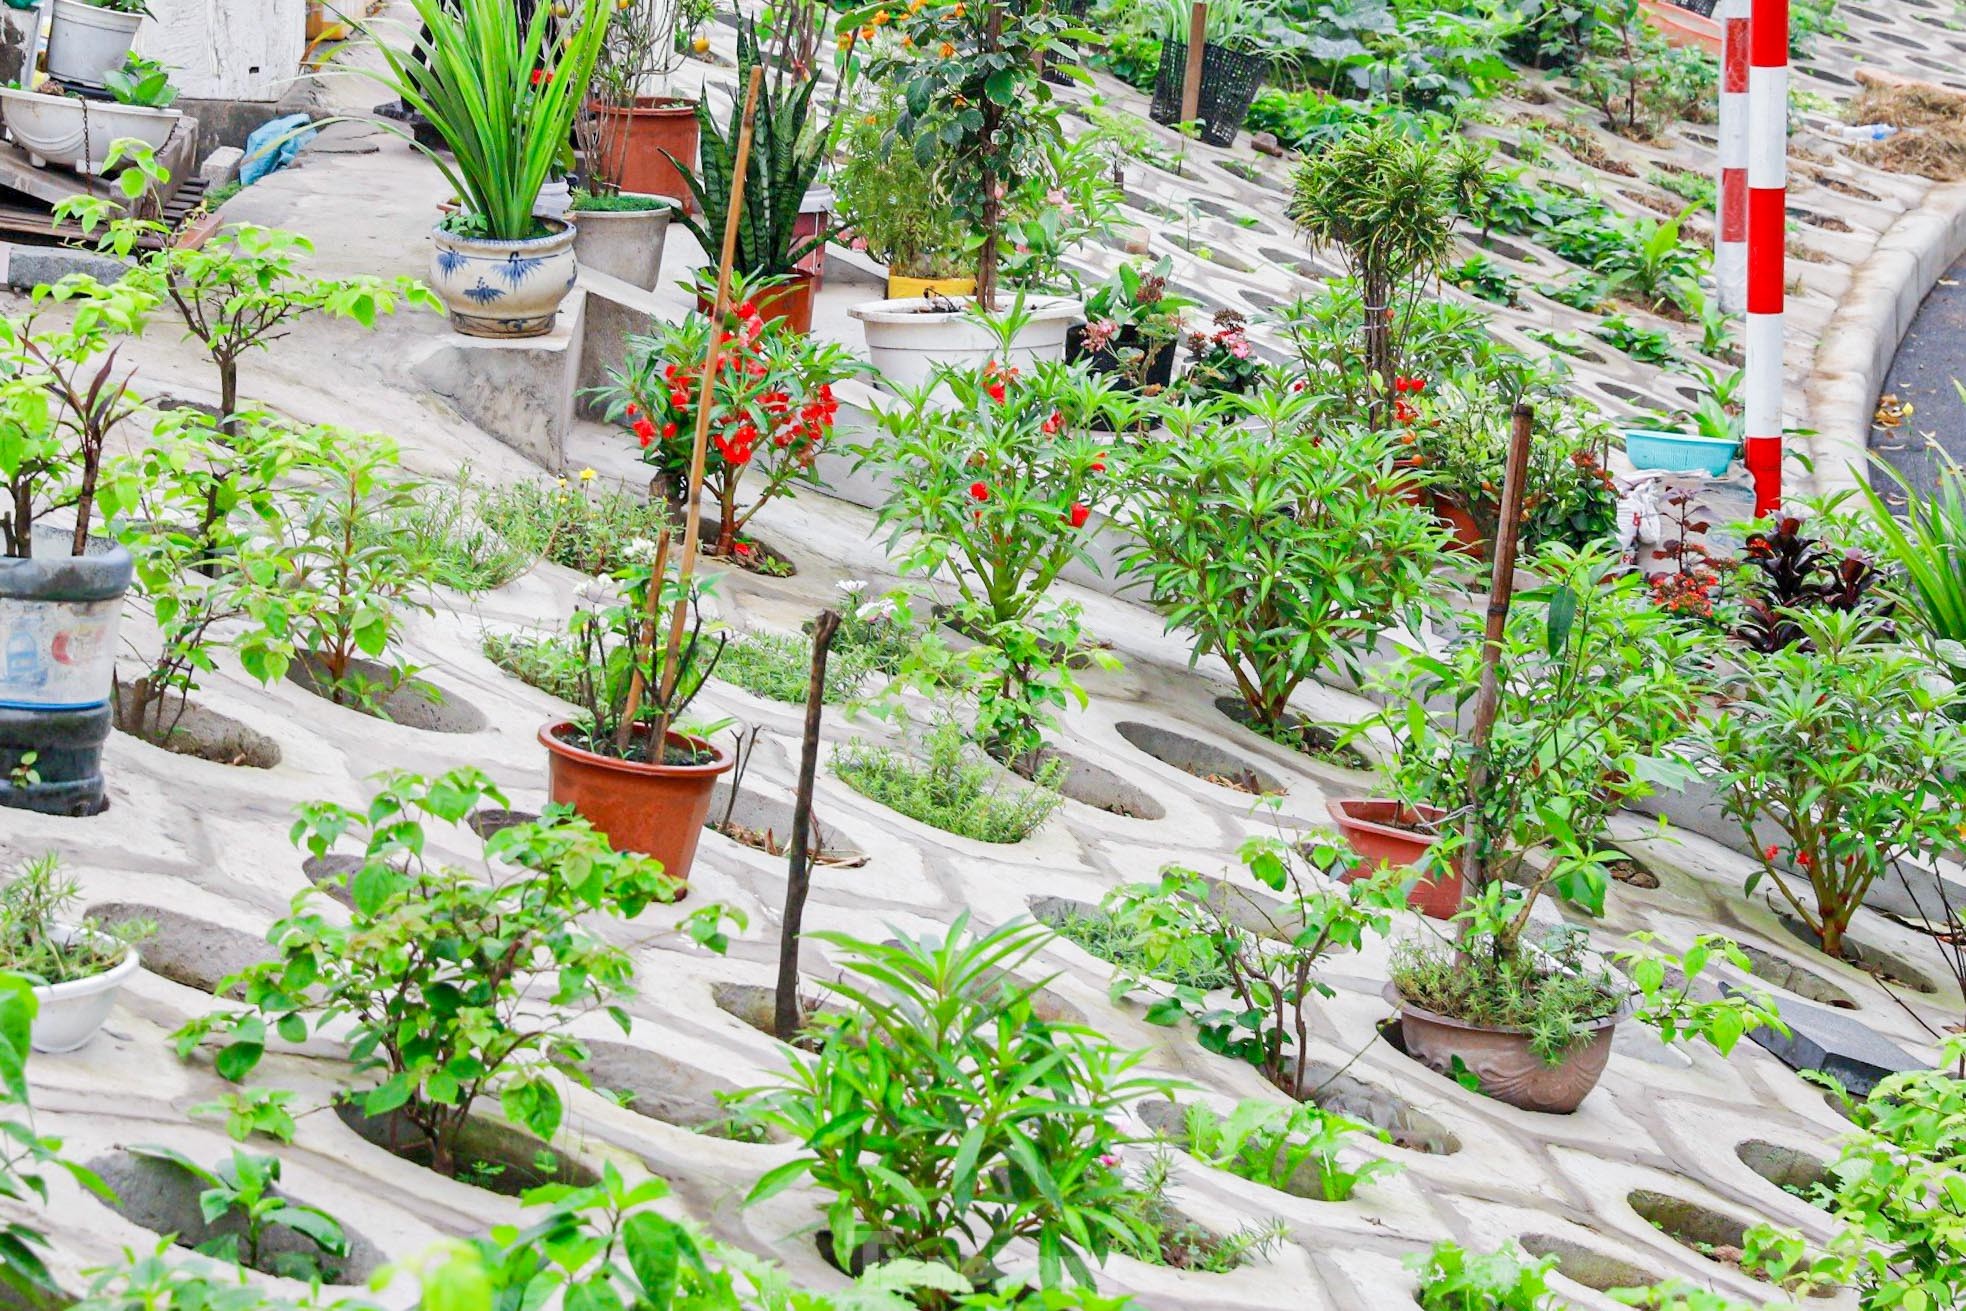 Trên đê Nguyễn Khoái, chỗ trồng rau phủ xanh, chỗ ngập rác ô nhiễm - Ảnh 5.